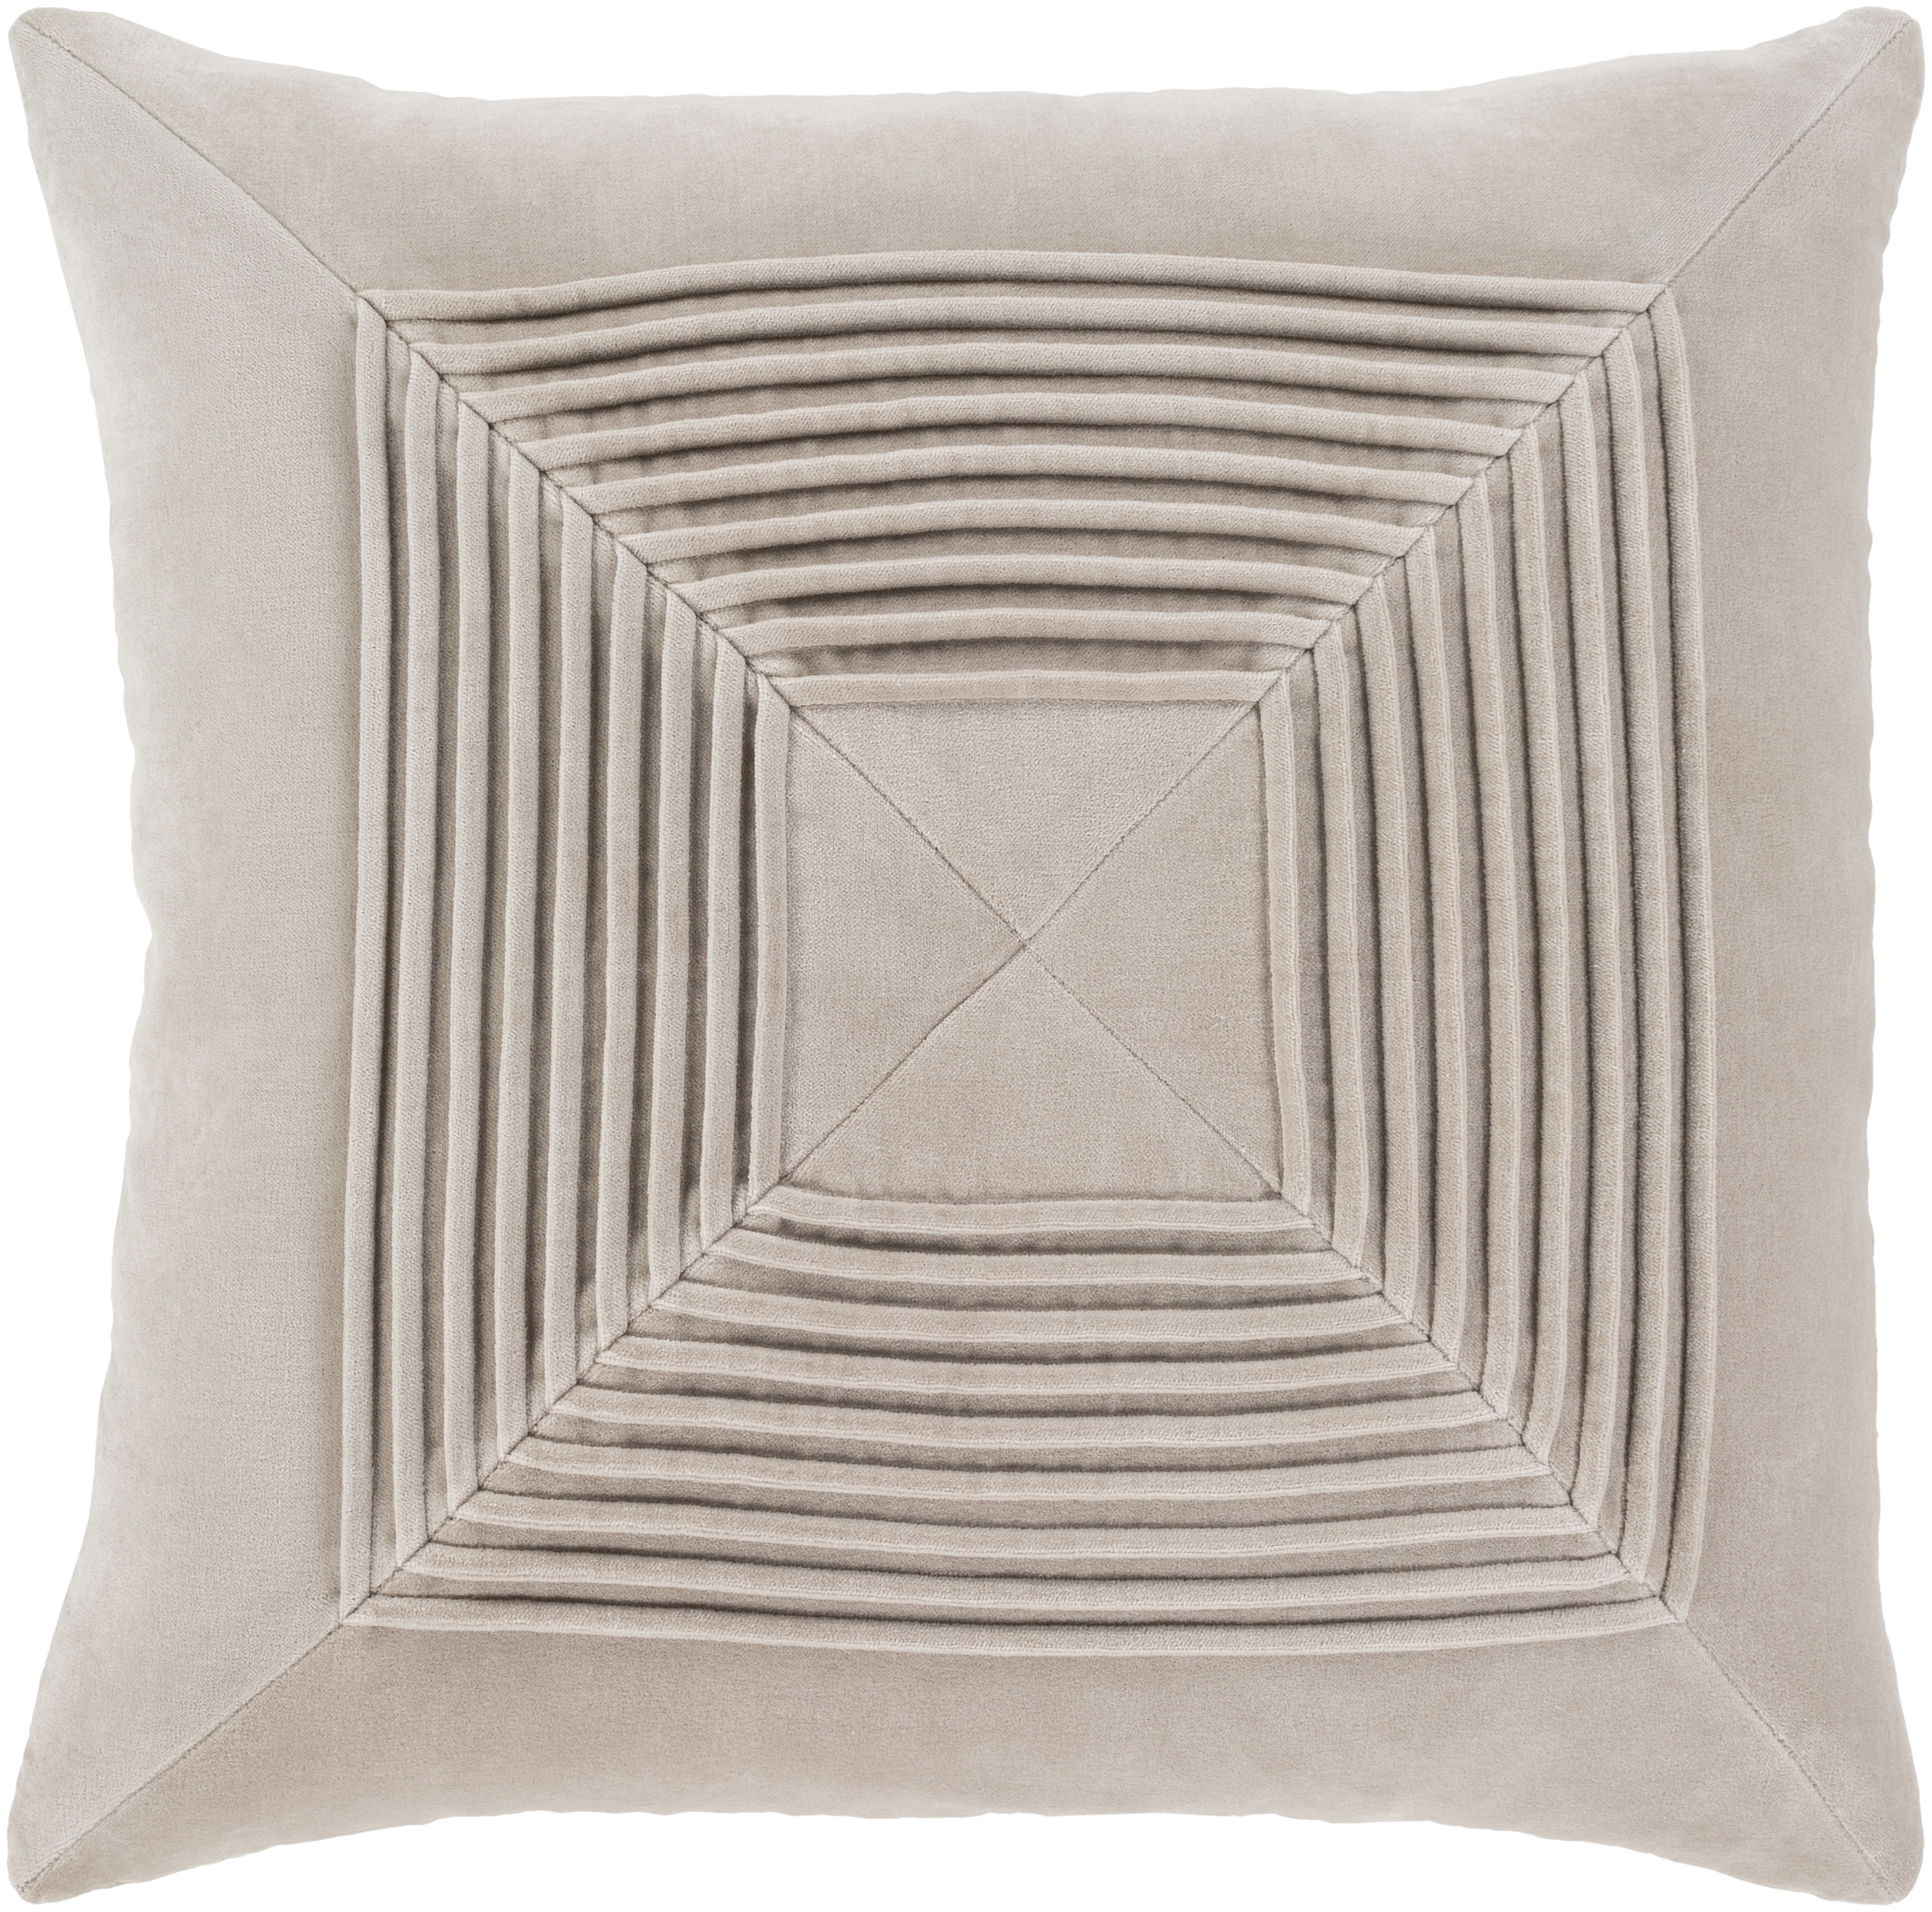 Akira AKA-006 Pillow Shell with Down Insert 22x22 - Image 0